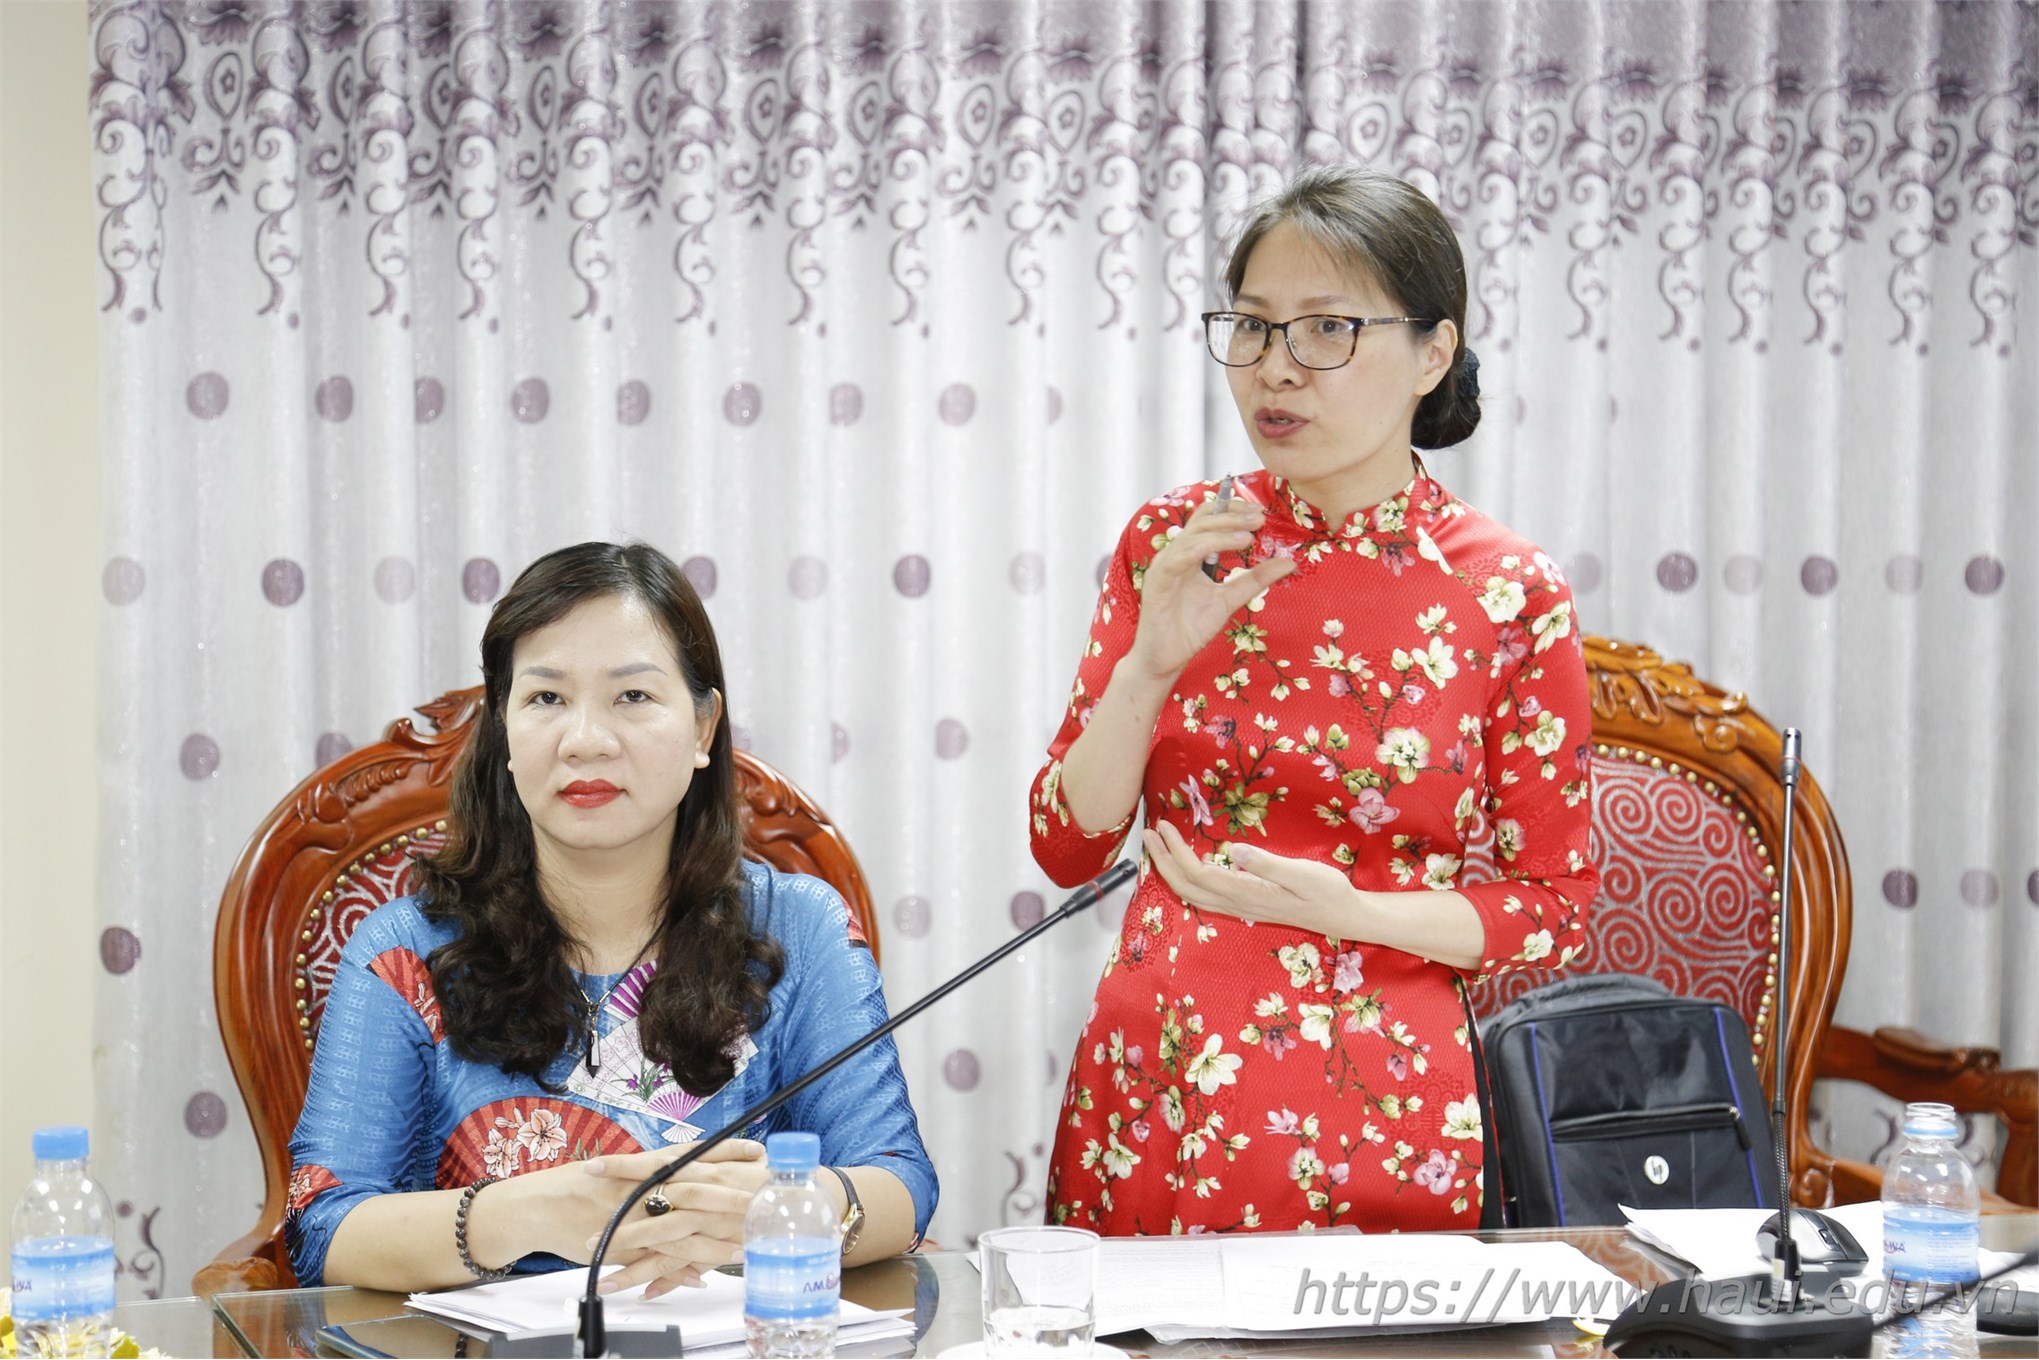 Trường Đại học Công nghiệp Hà Nội mở ngành đào tạo trình độ thạc sĩ ngành Công nghệ dệt, may